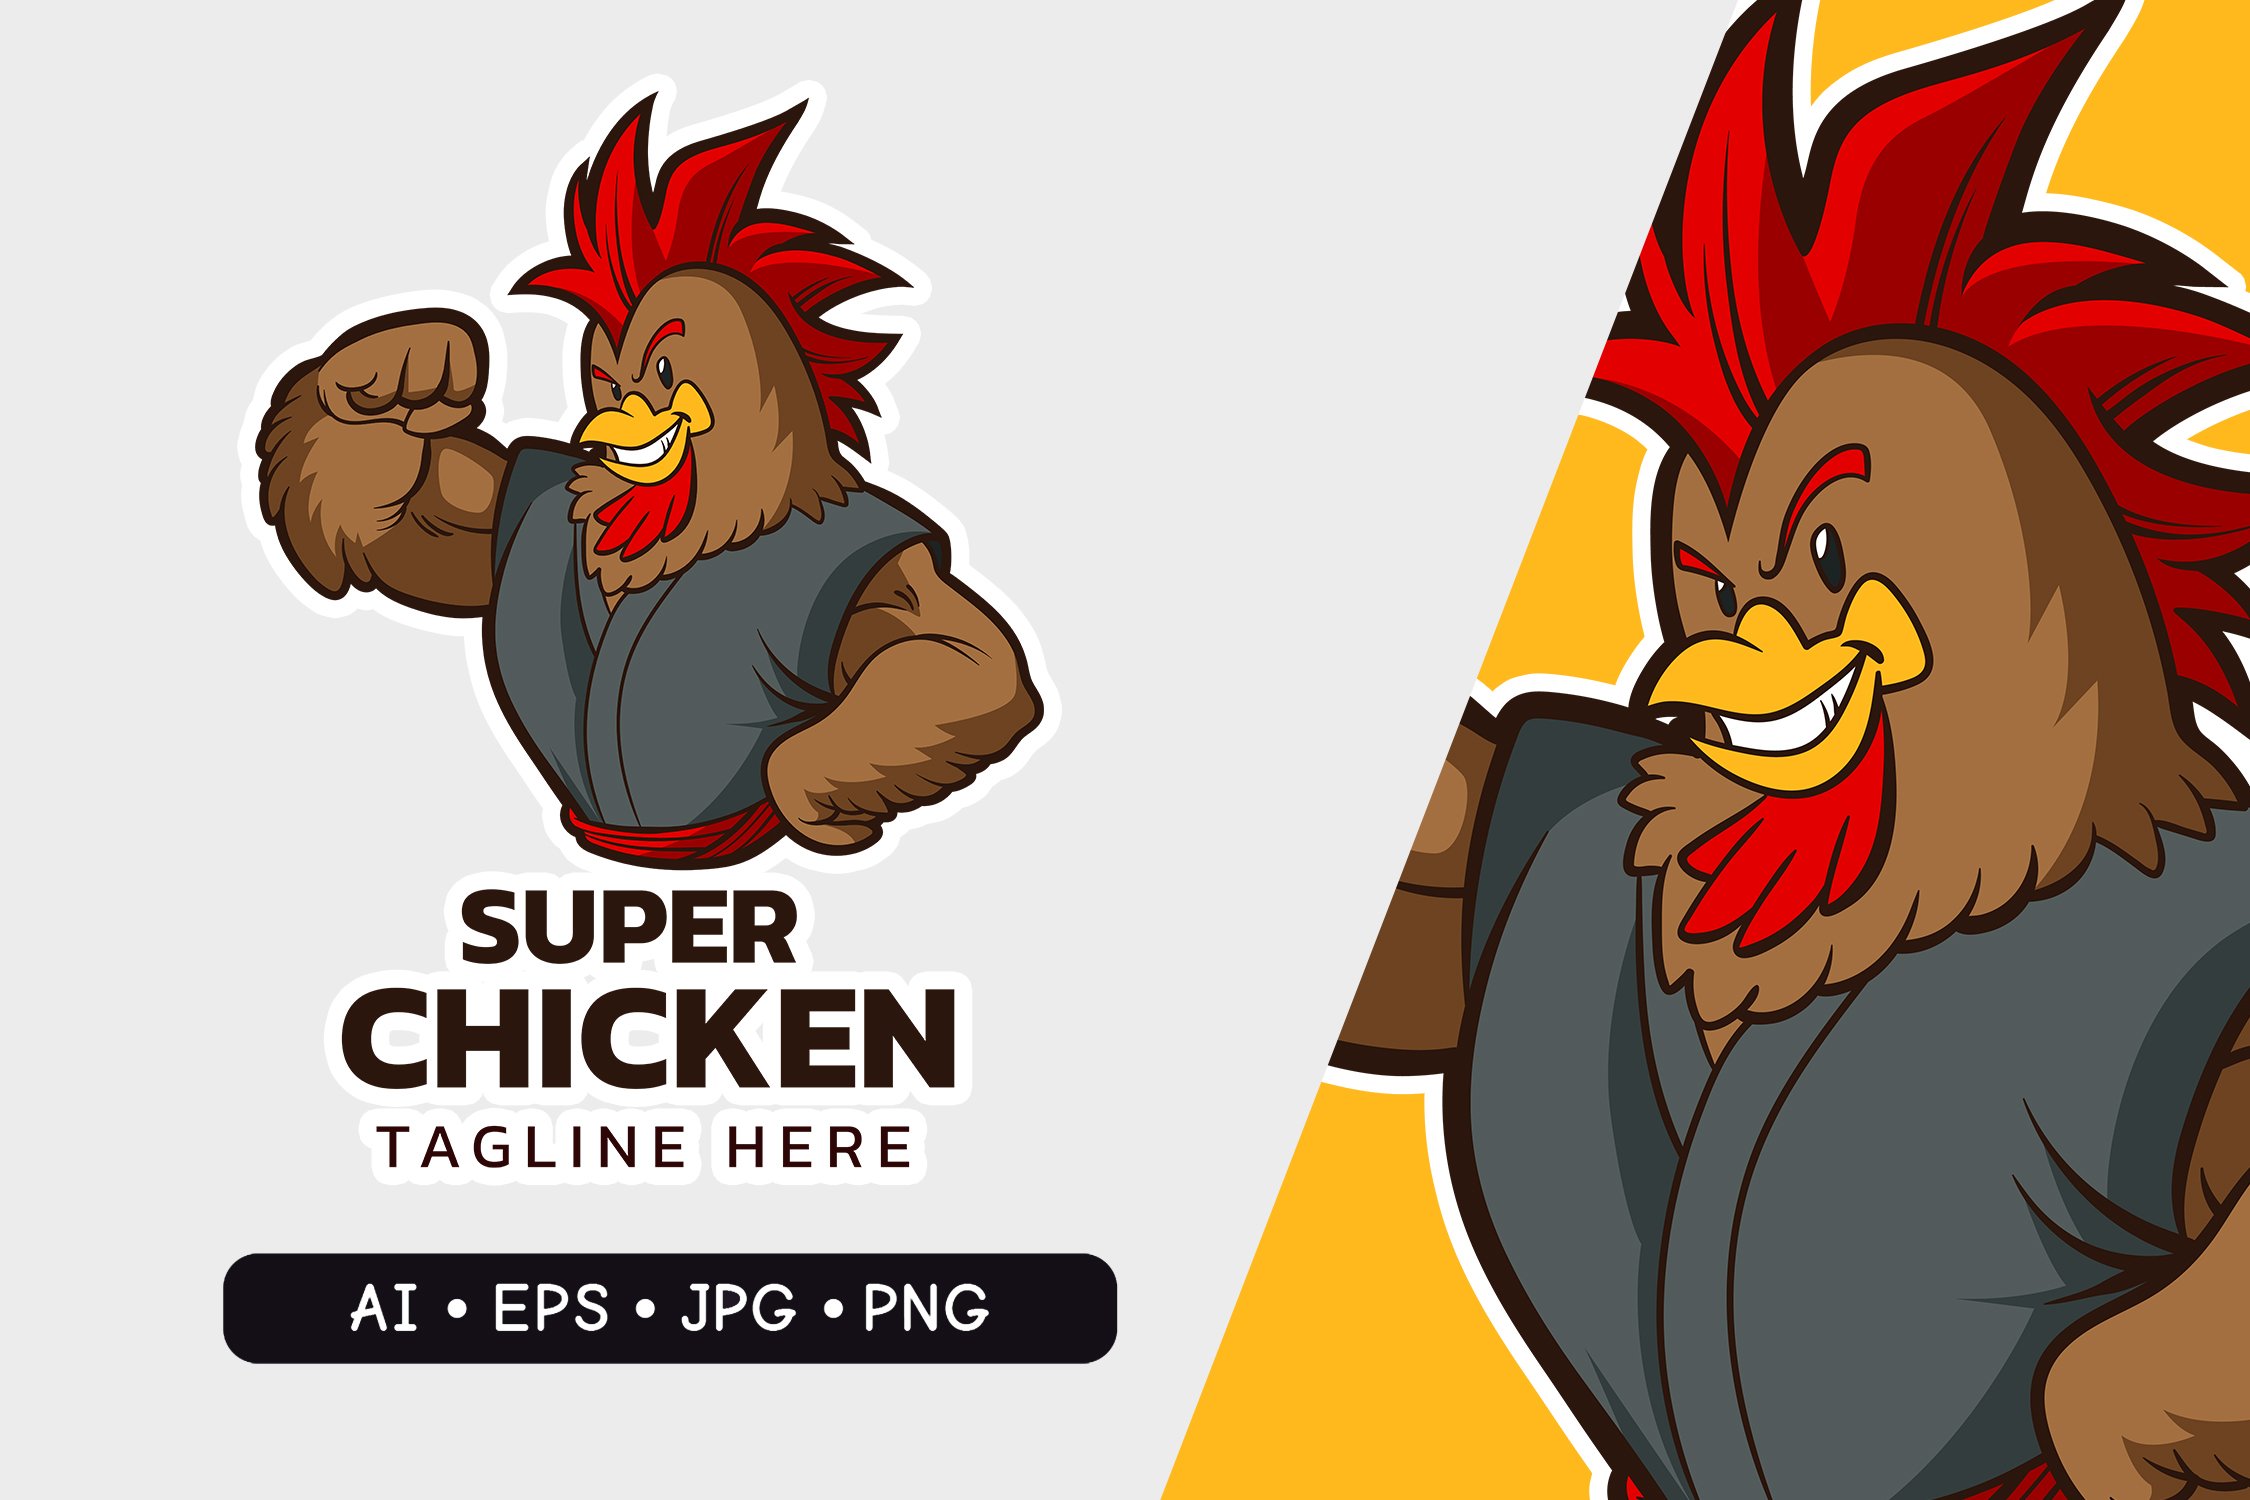 Super Chicken - Mascot Logo cover image.